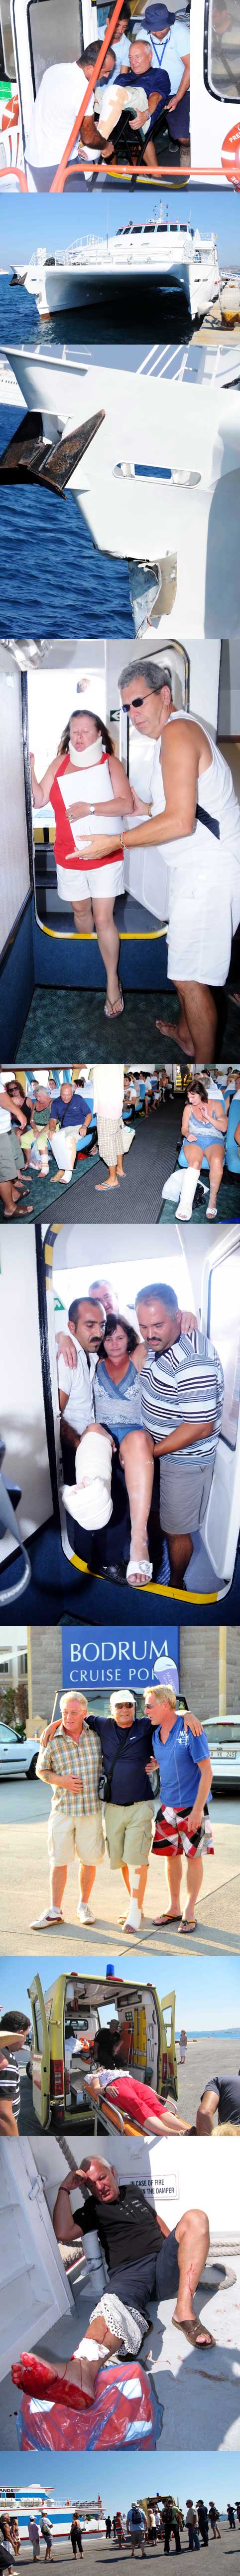 Aegean Cat passengers returns to Bodrum